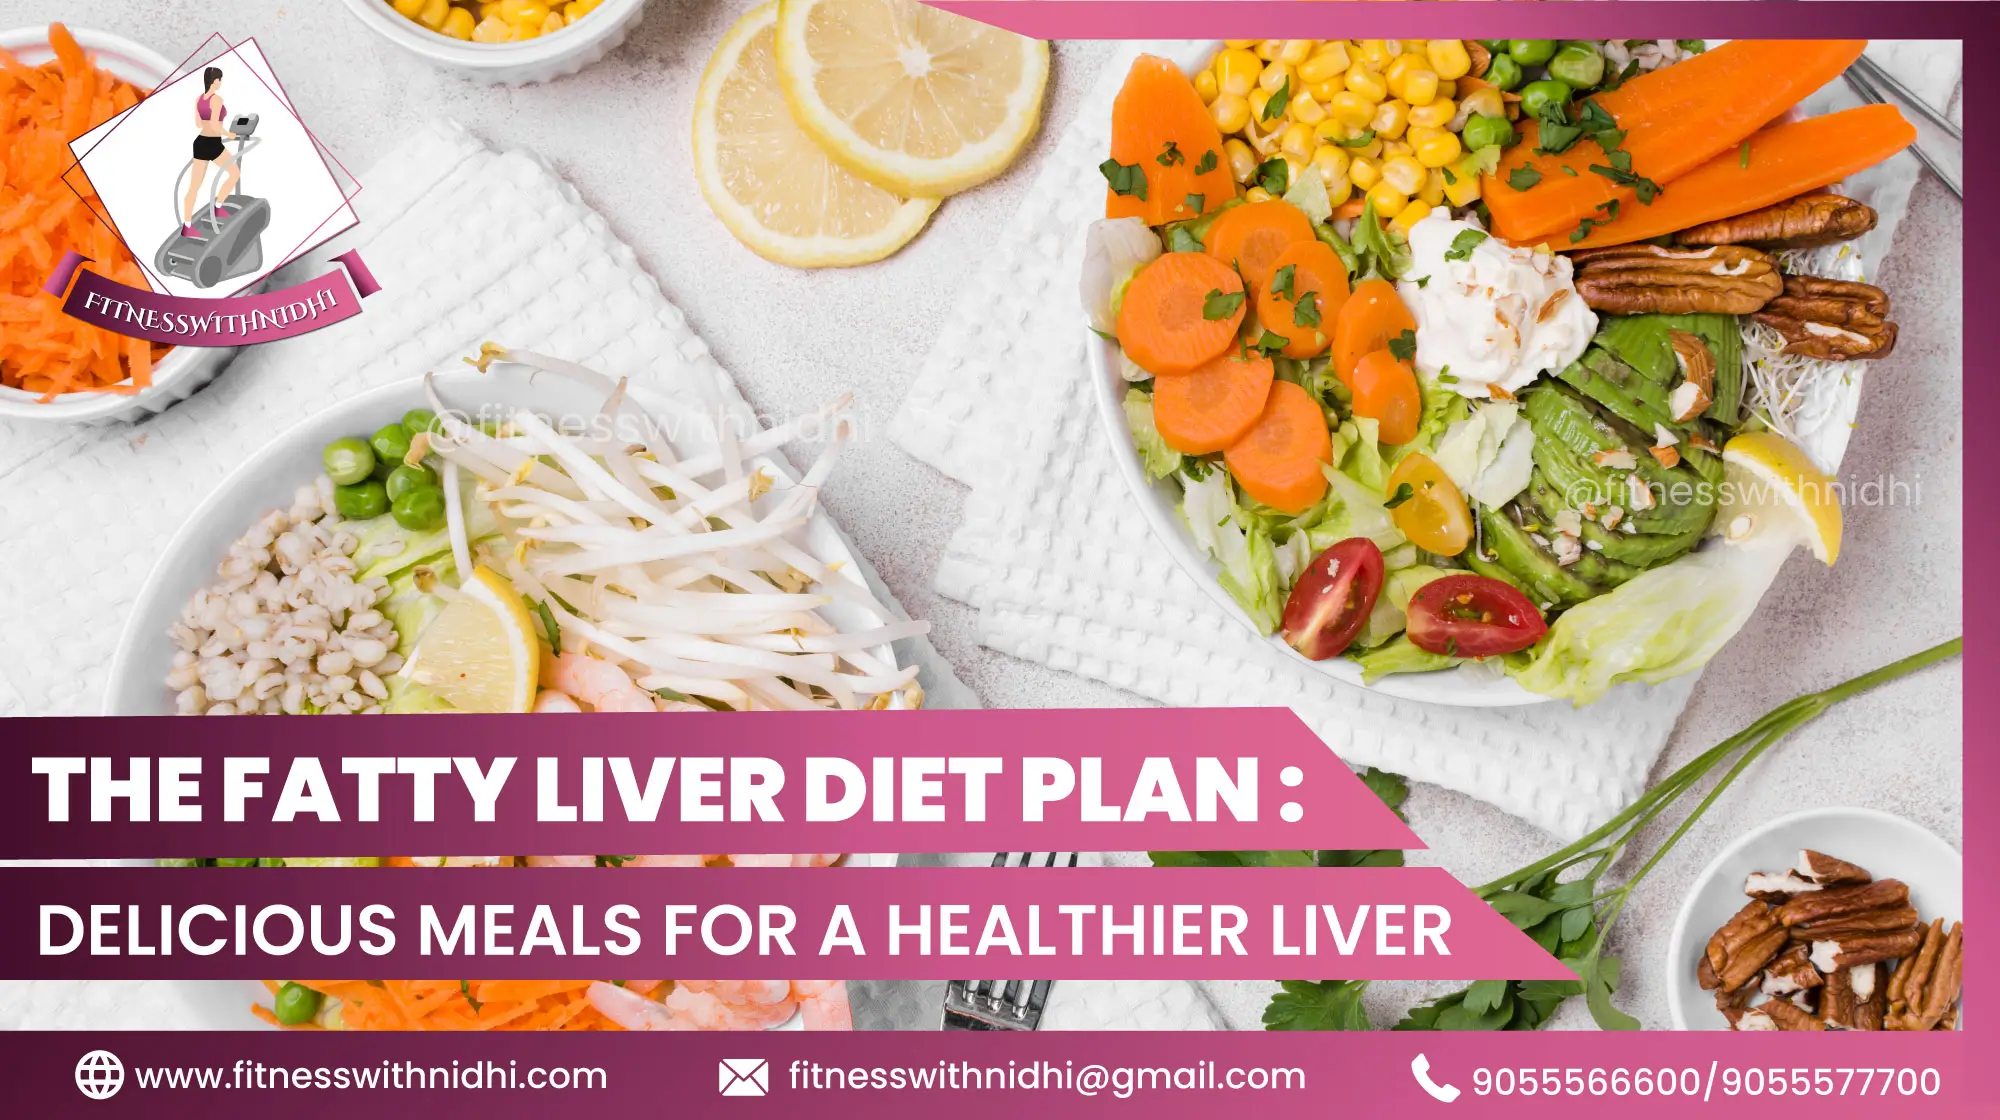 11fatty liver diet foods